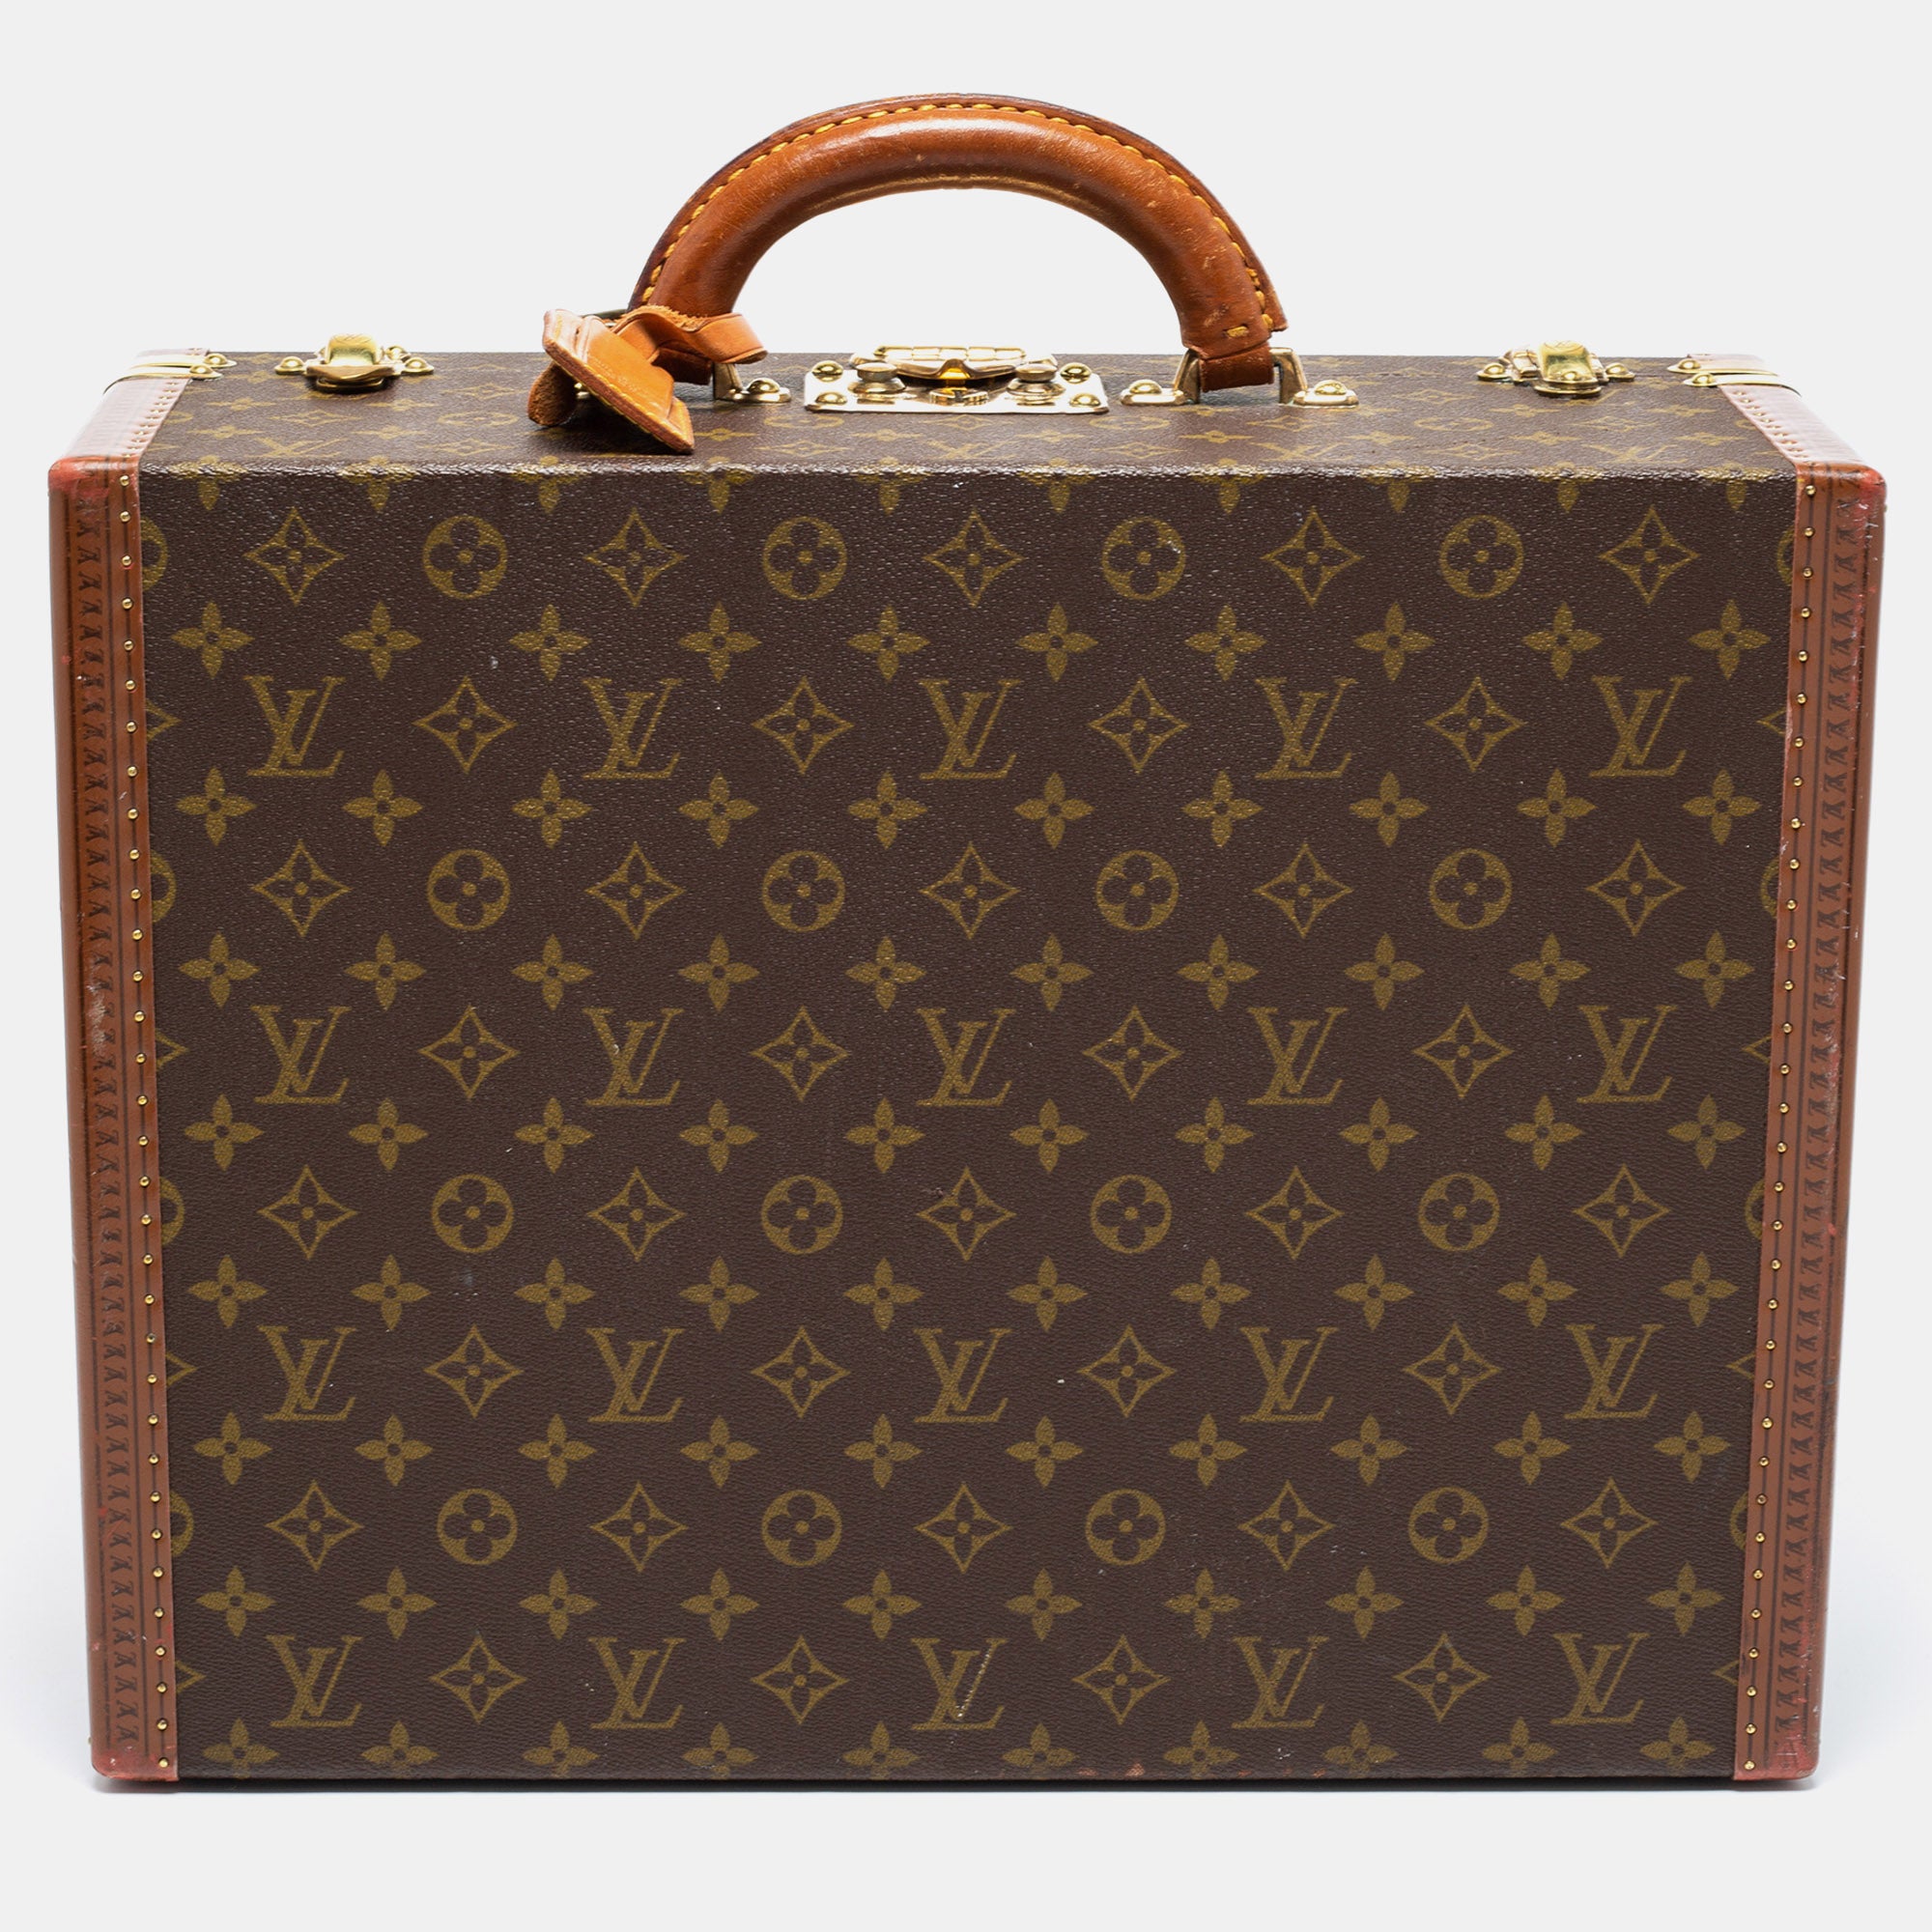 Louis Vuitton Case - Luxury Brand Case Shop